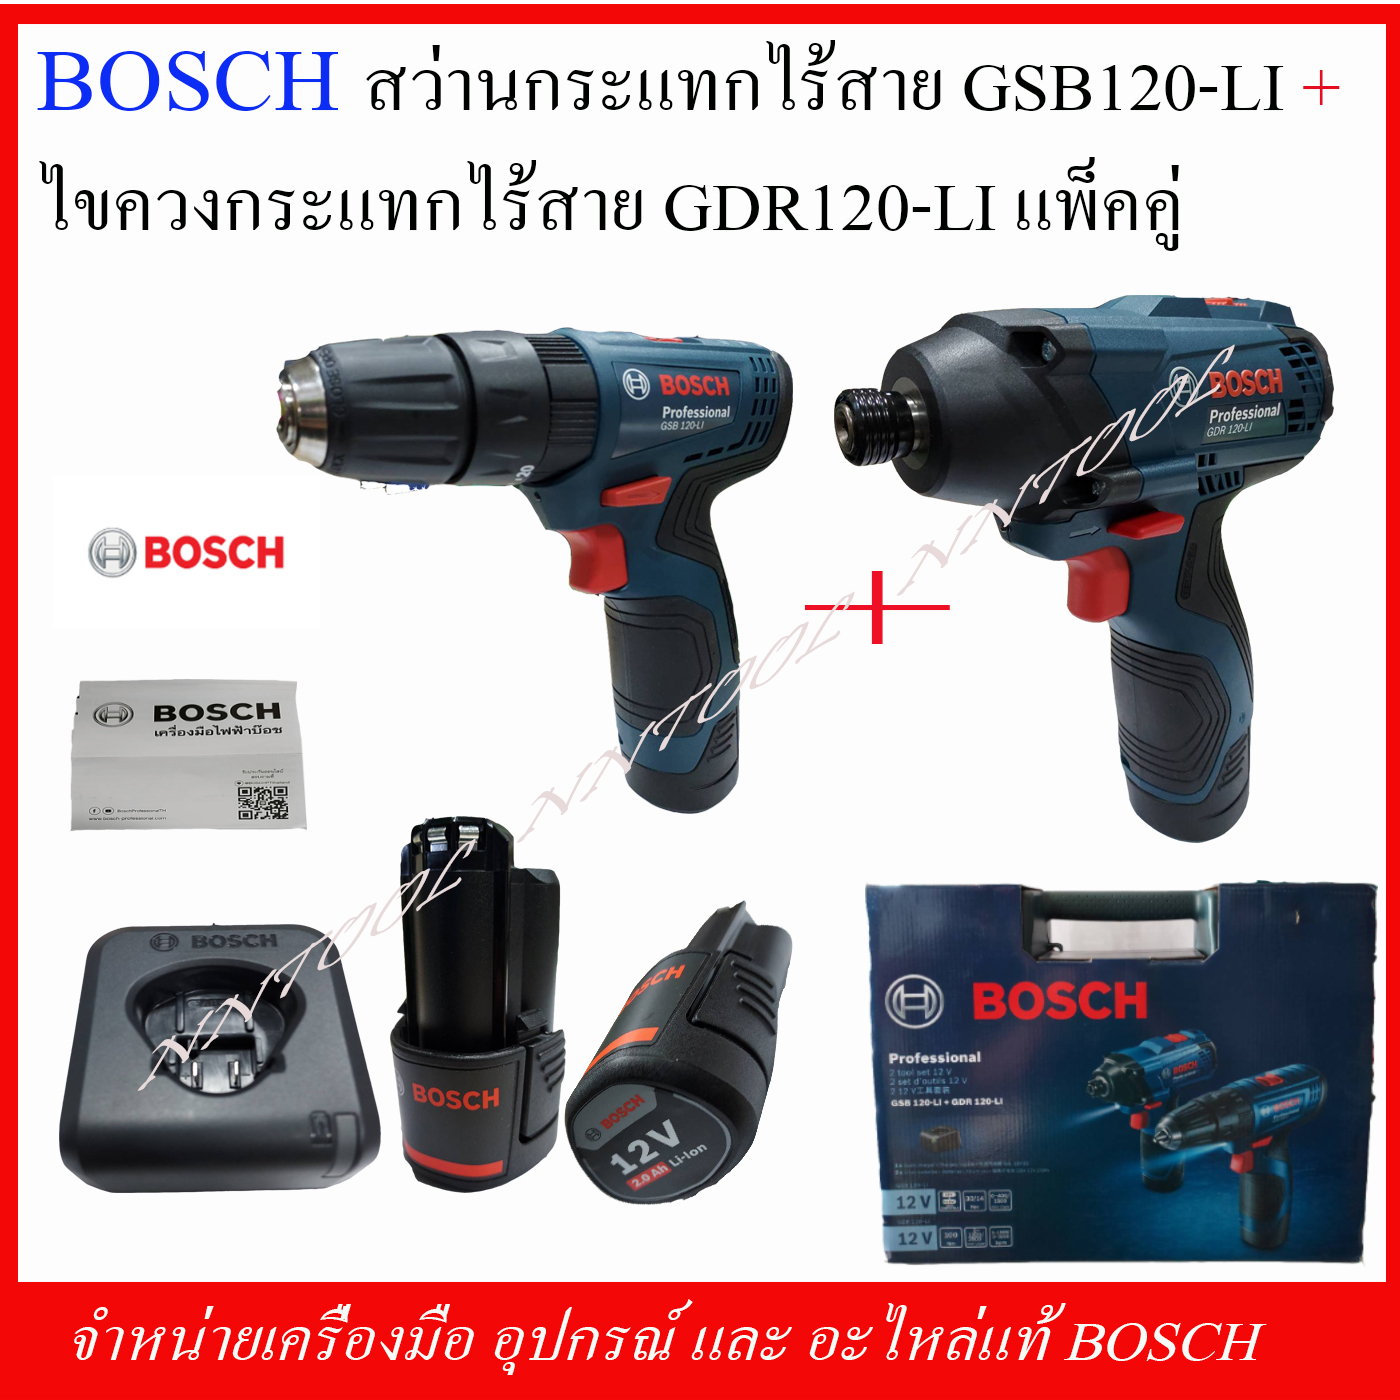 Bosch à¸ªà¸§ à¸²à¸™à¸à¸£à¸°à¹à¸—à¸à¹„à¸£ à¸ªà¸²à¸¢ Gsb 120 Li à¸šà¸¥ à¸­à¸à¹„à¸‚à¸„à¸§à¸‡à¹„à¸£ à¸ªà¸²à¸¢ Gdr 120 Li Set à¸„ à¸ª à¸